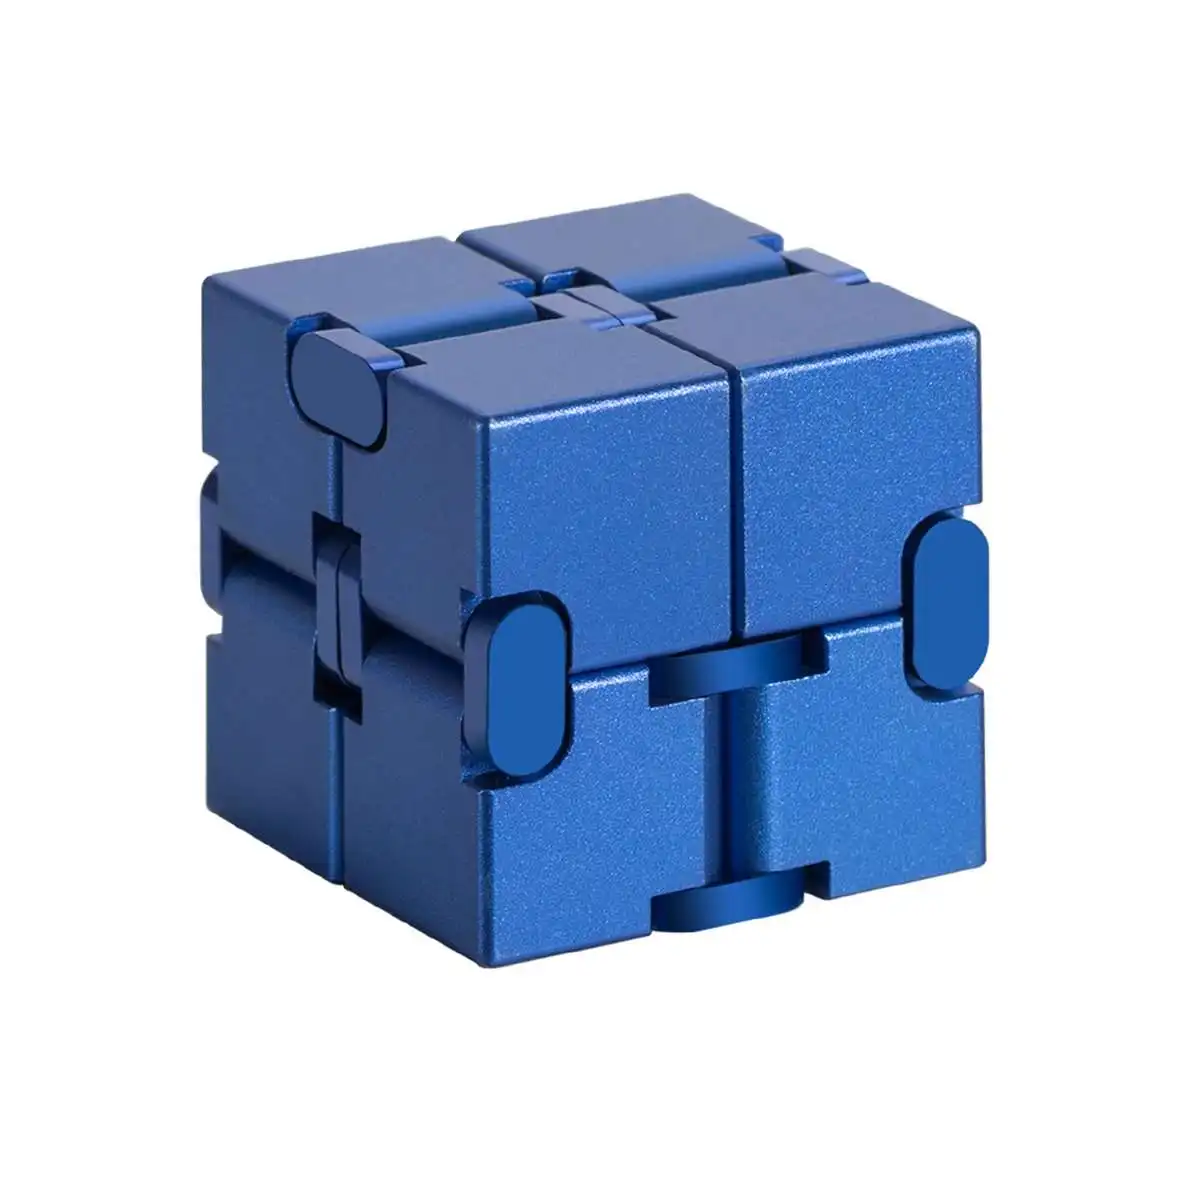 Обновленная версия мини Инфинит куб палец для избавления от стресса и тревожности Блоки Игрушки Magic Cube игрушечный кубик-головоломка расслабиться игрушка для взрослых и детей